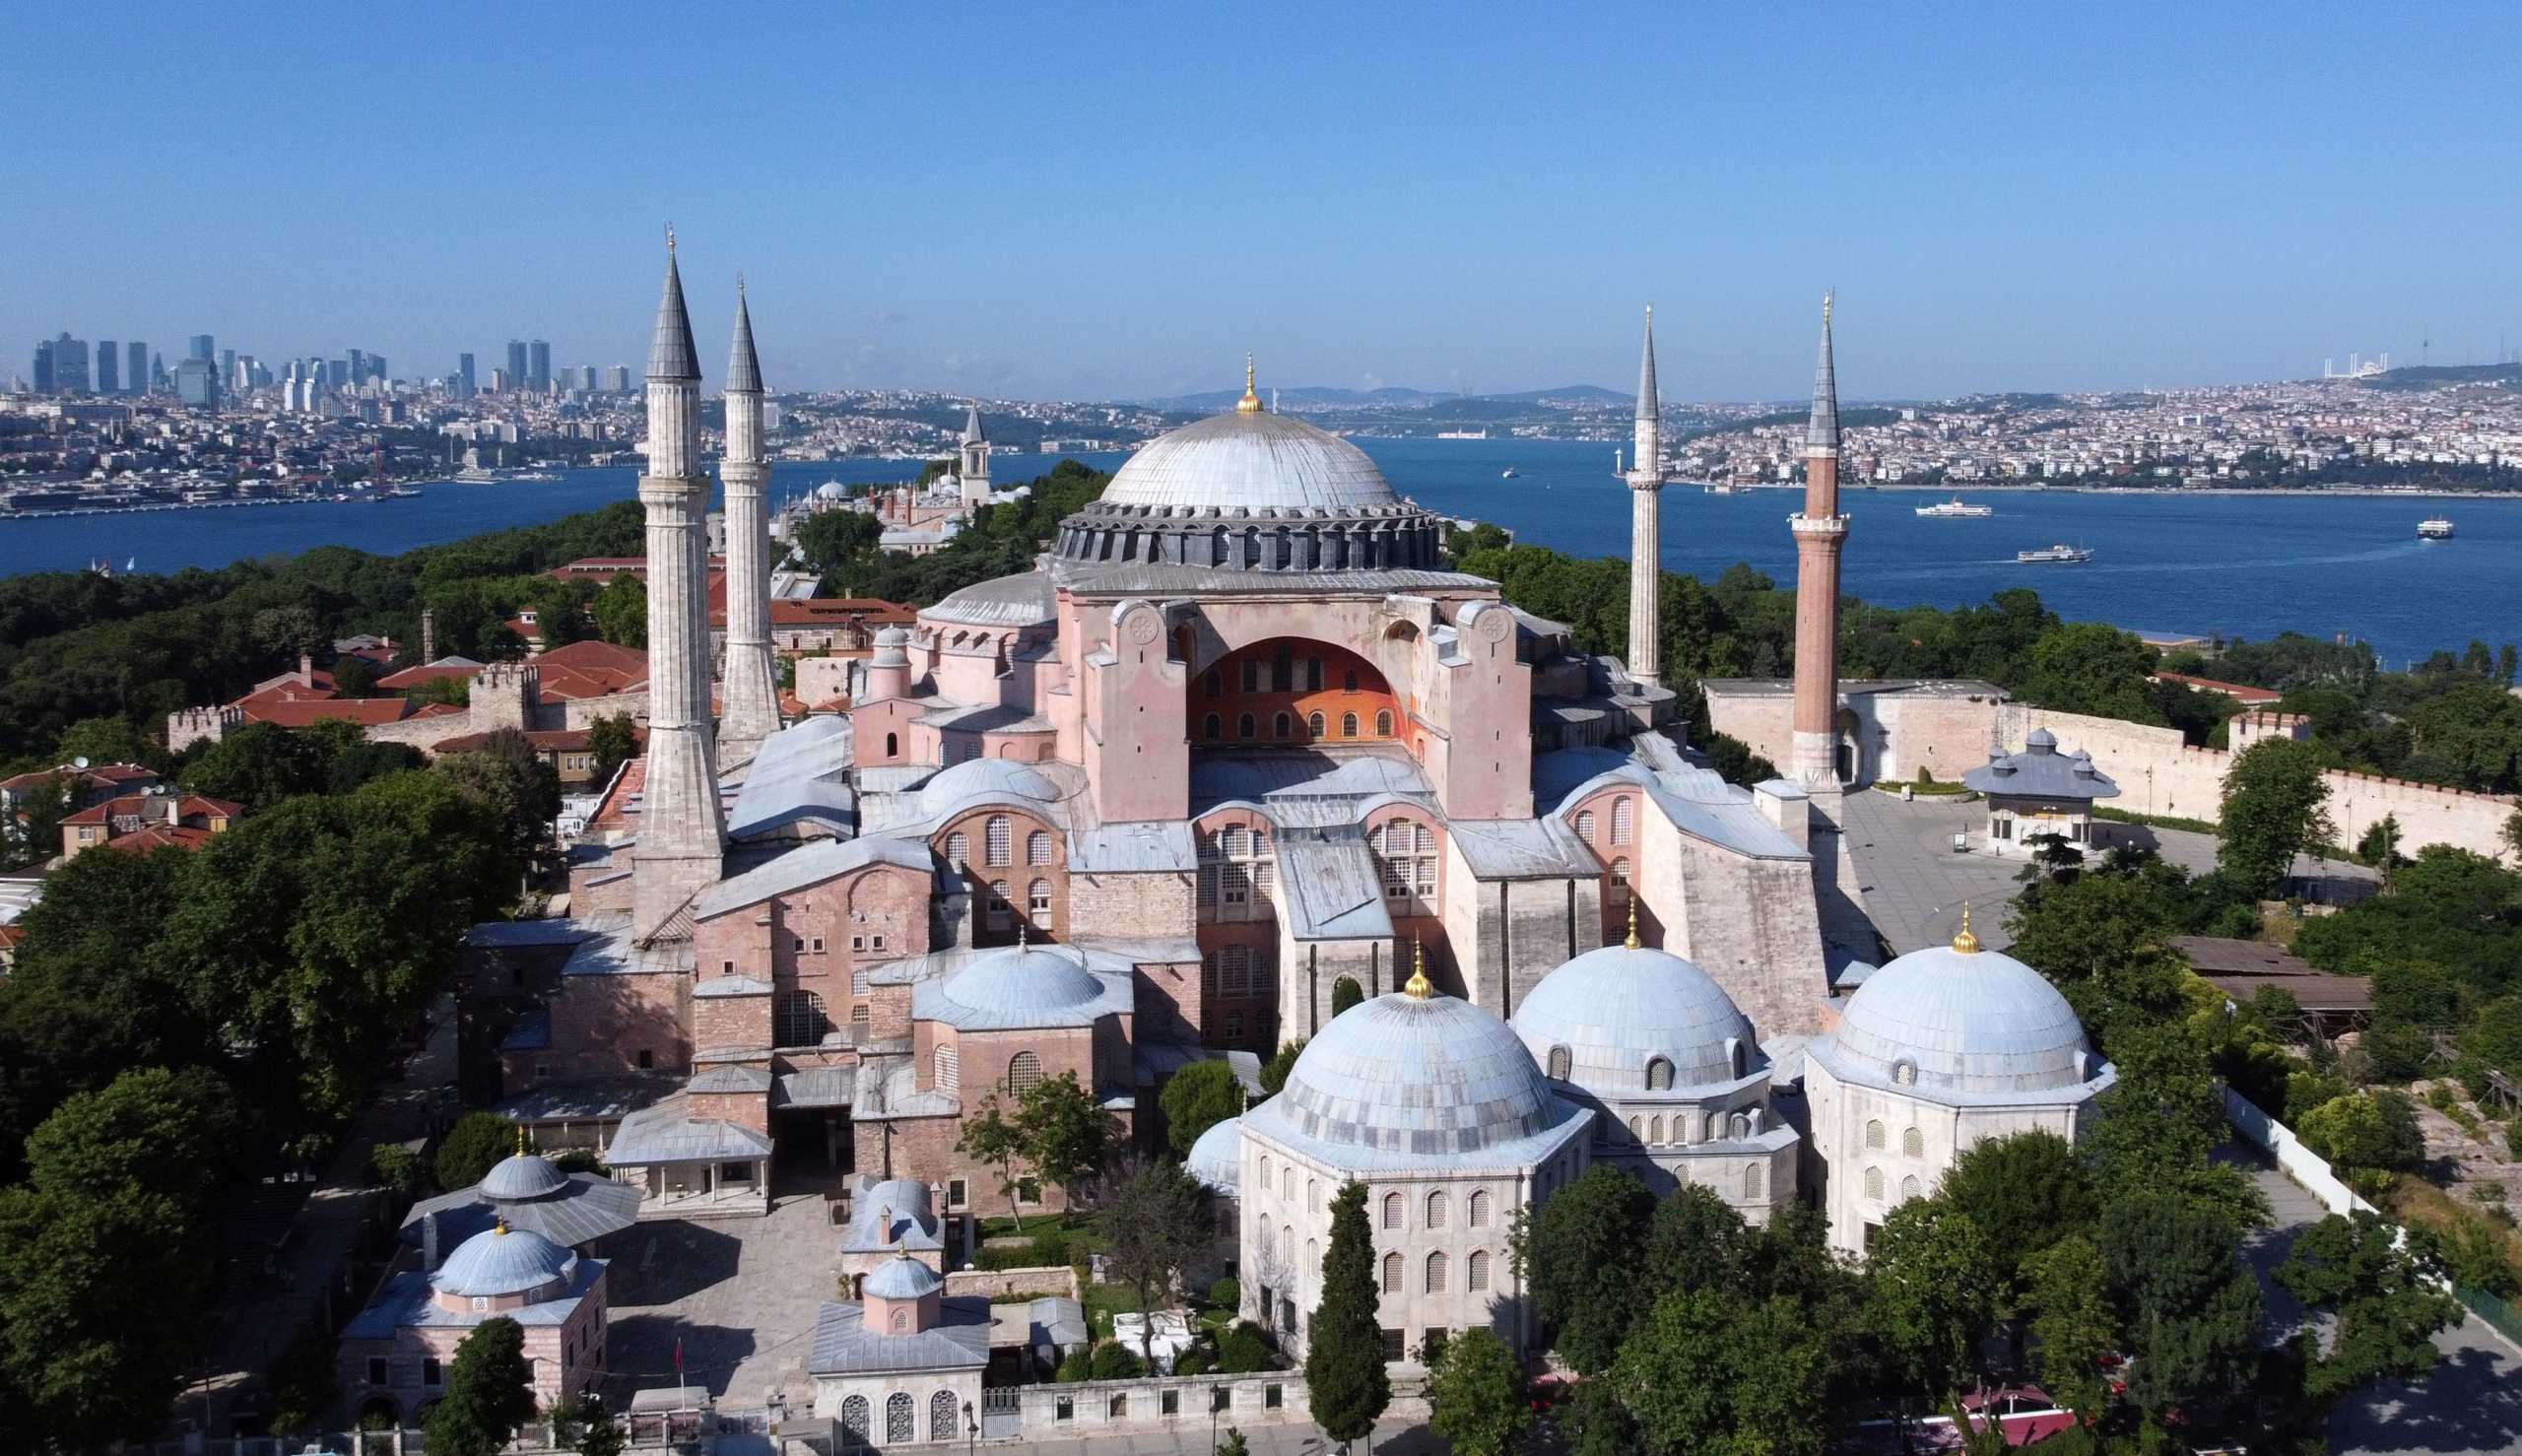 Τουρκία: Παρέμβαση της UNESCO για την μετατροπή της Μονής της Χώρας σε τζαμί